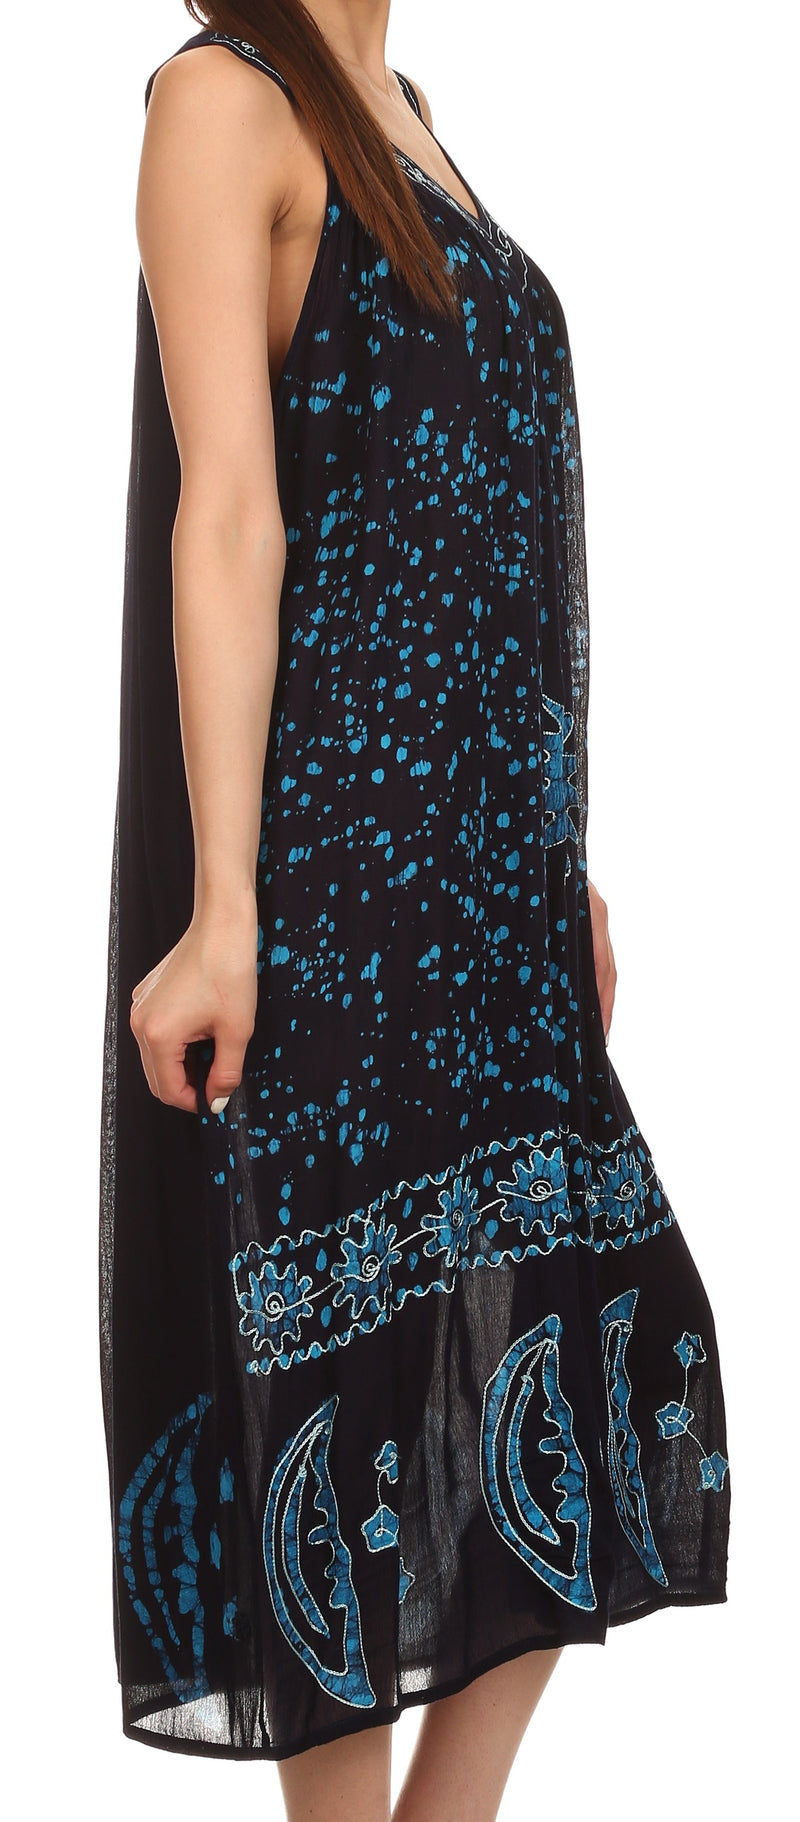 Sakkas Jaelyn Embroidered Tank Top Split Neck Broomstick Dress / Cover Up